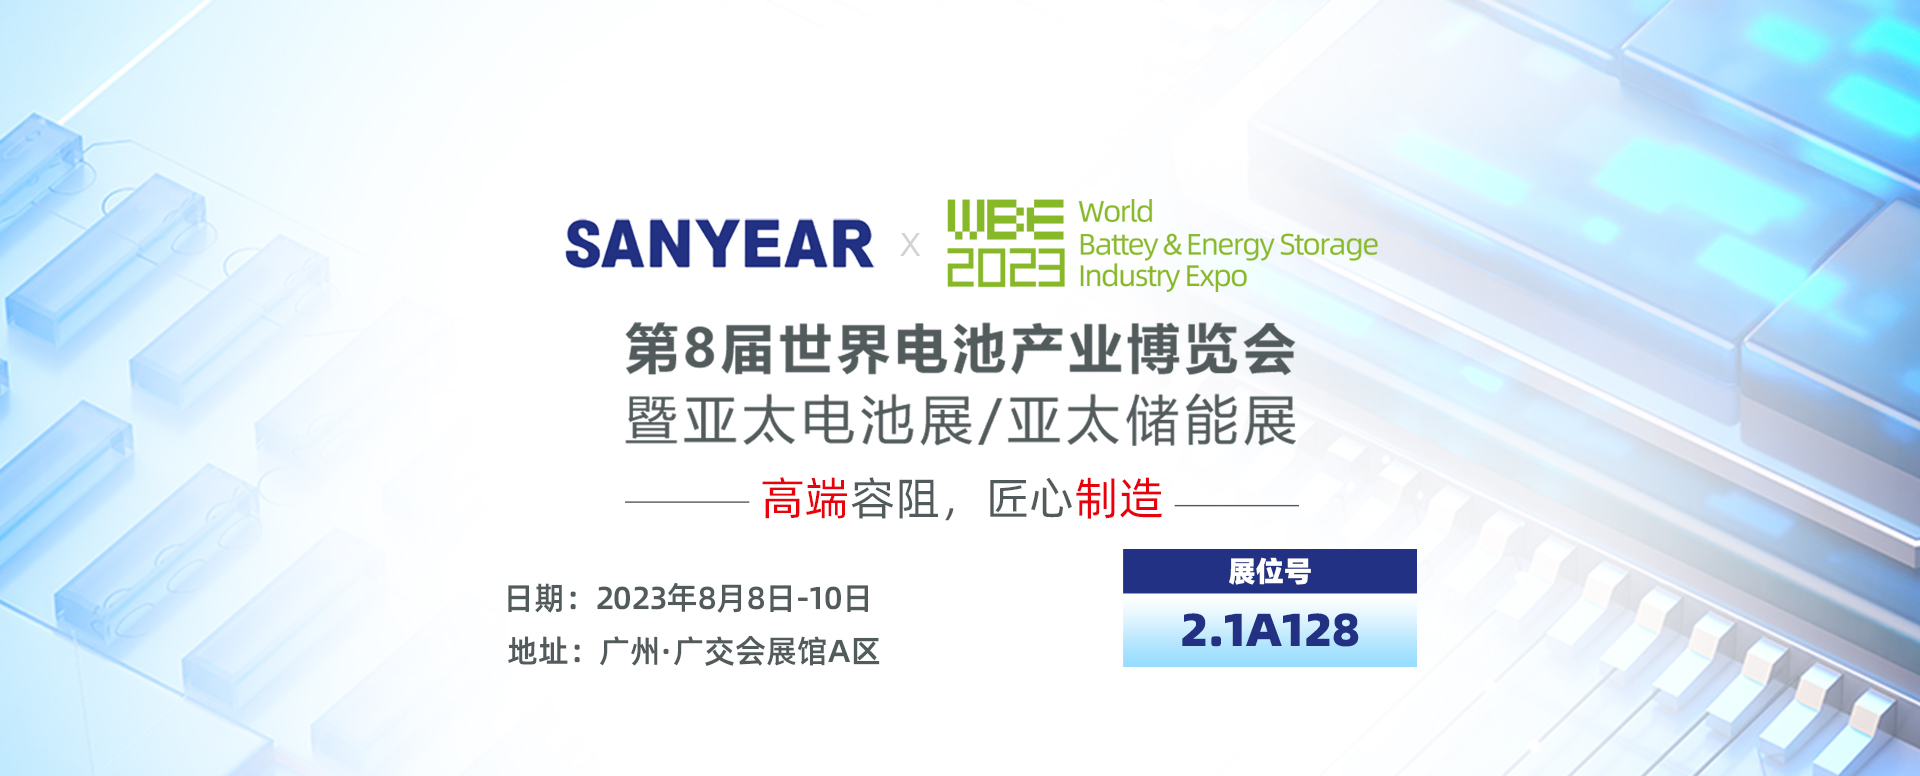 叁叶源（SANYEAR）第8届世界电池产业博览会，暨亚太电池展/亚太储能展